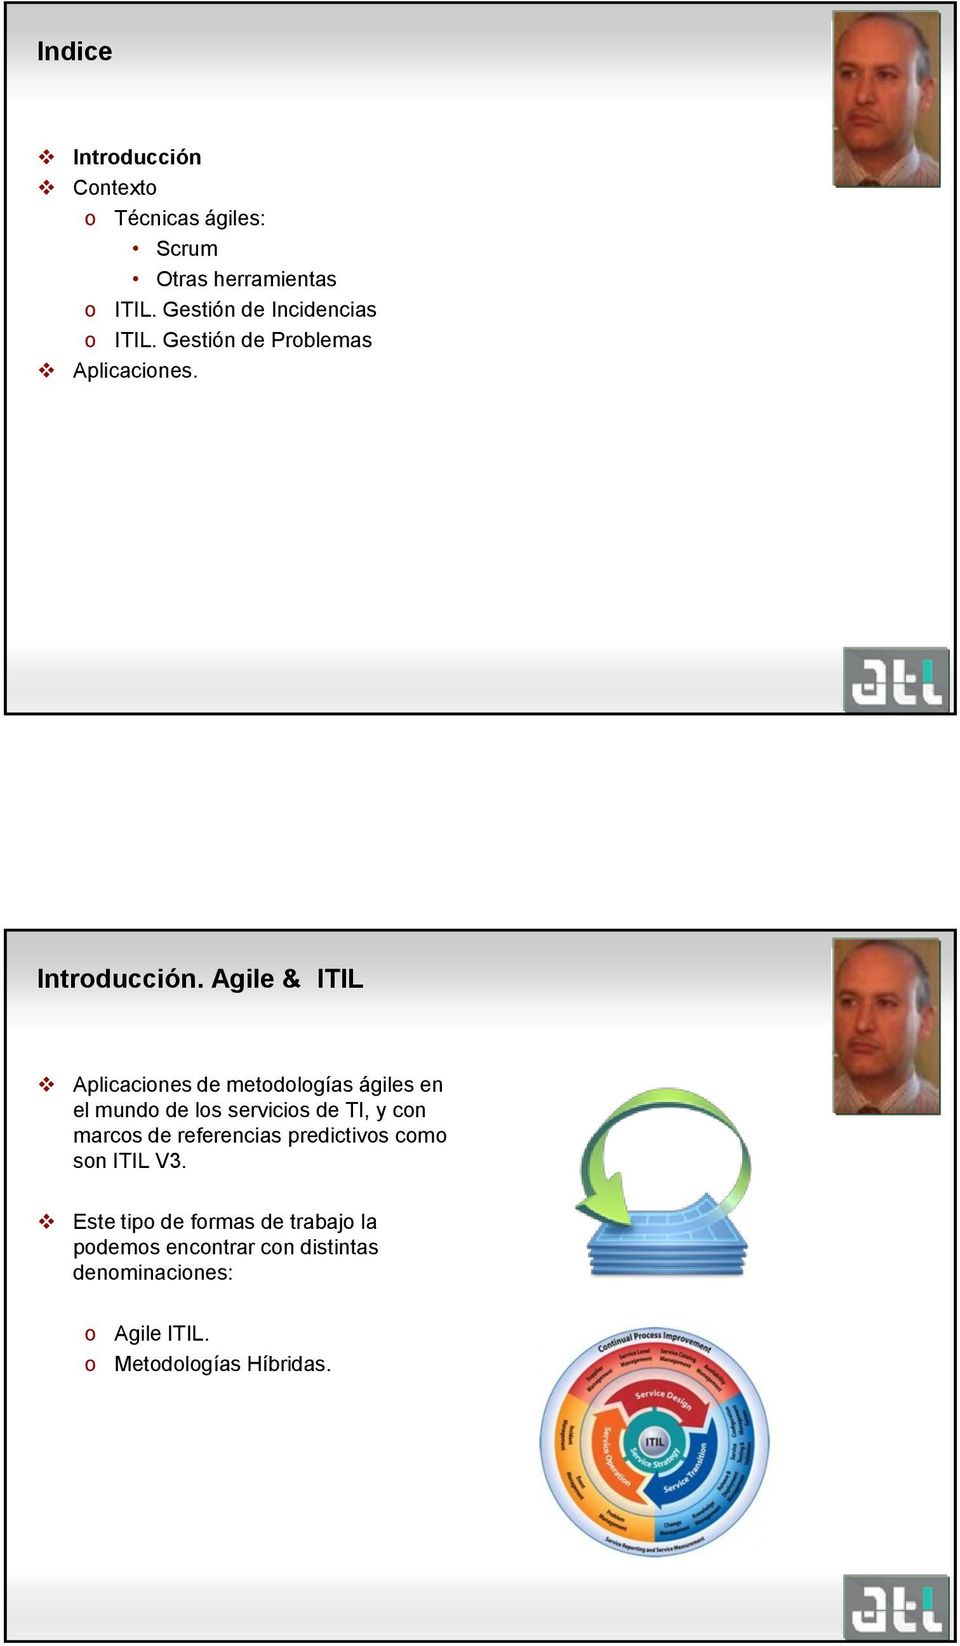 Agile & ITIL Aplicacines de metdlgías ágiles en el mund de ls servicis de TI, y cn marcs de